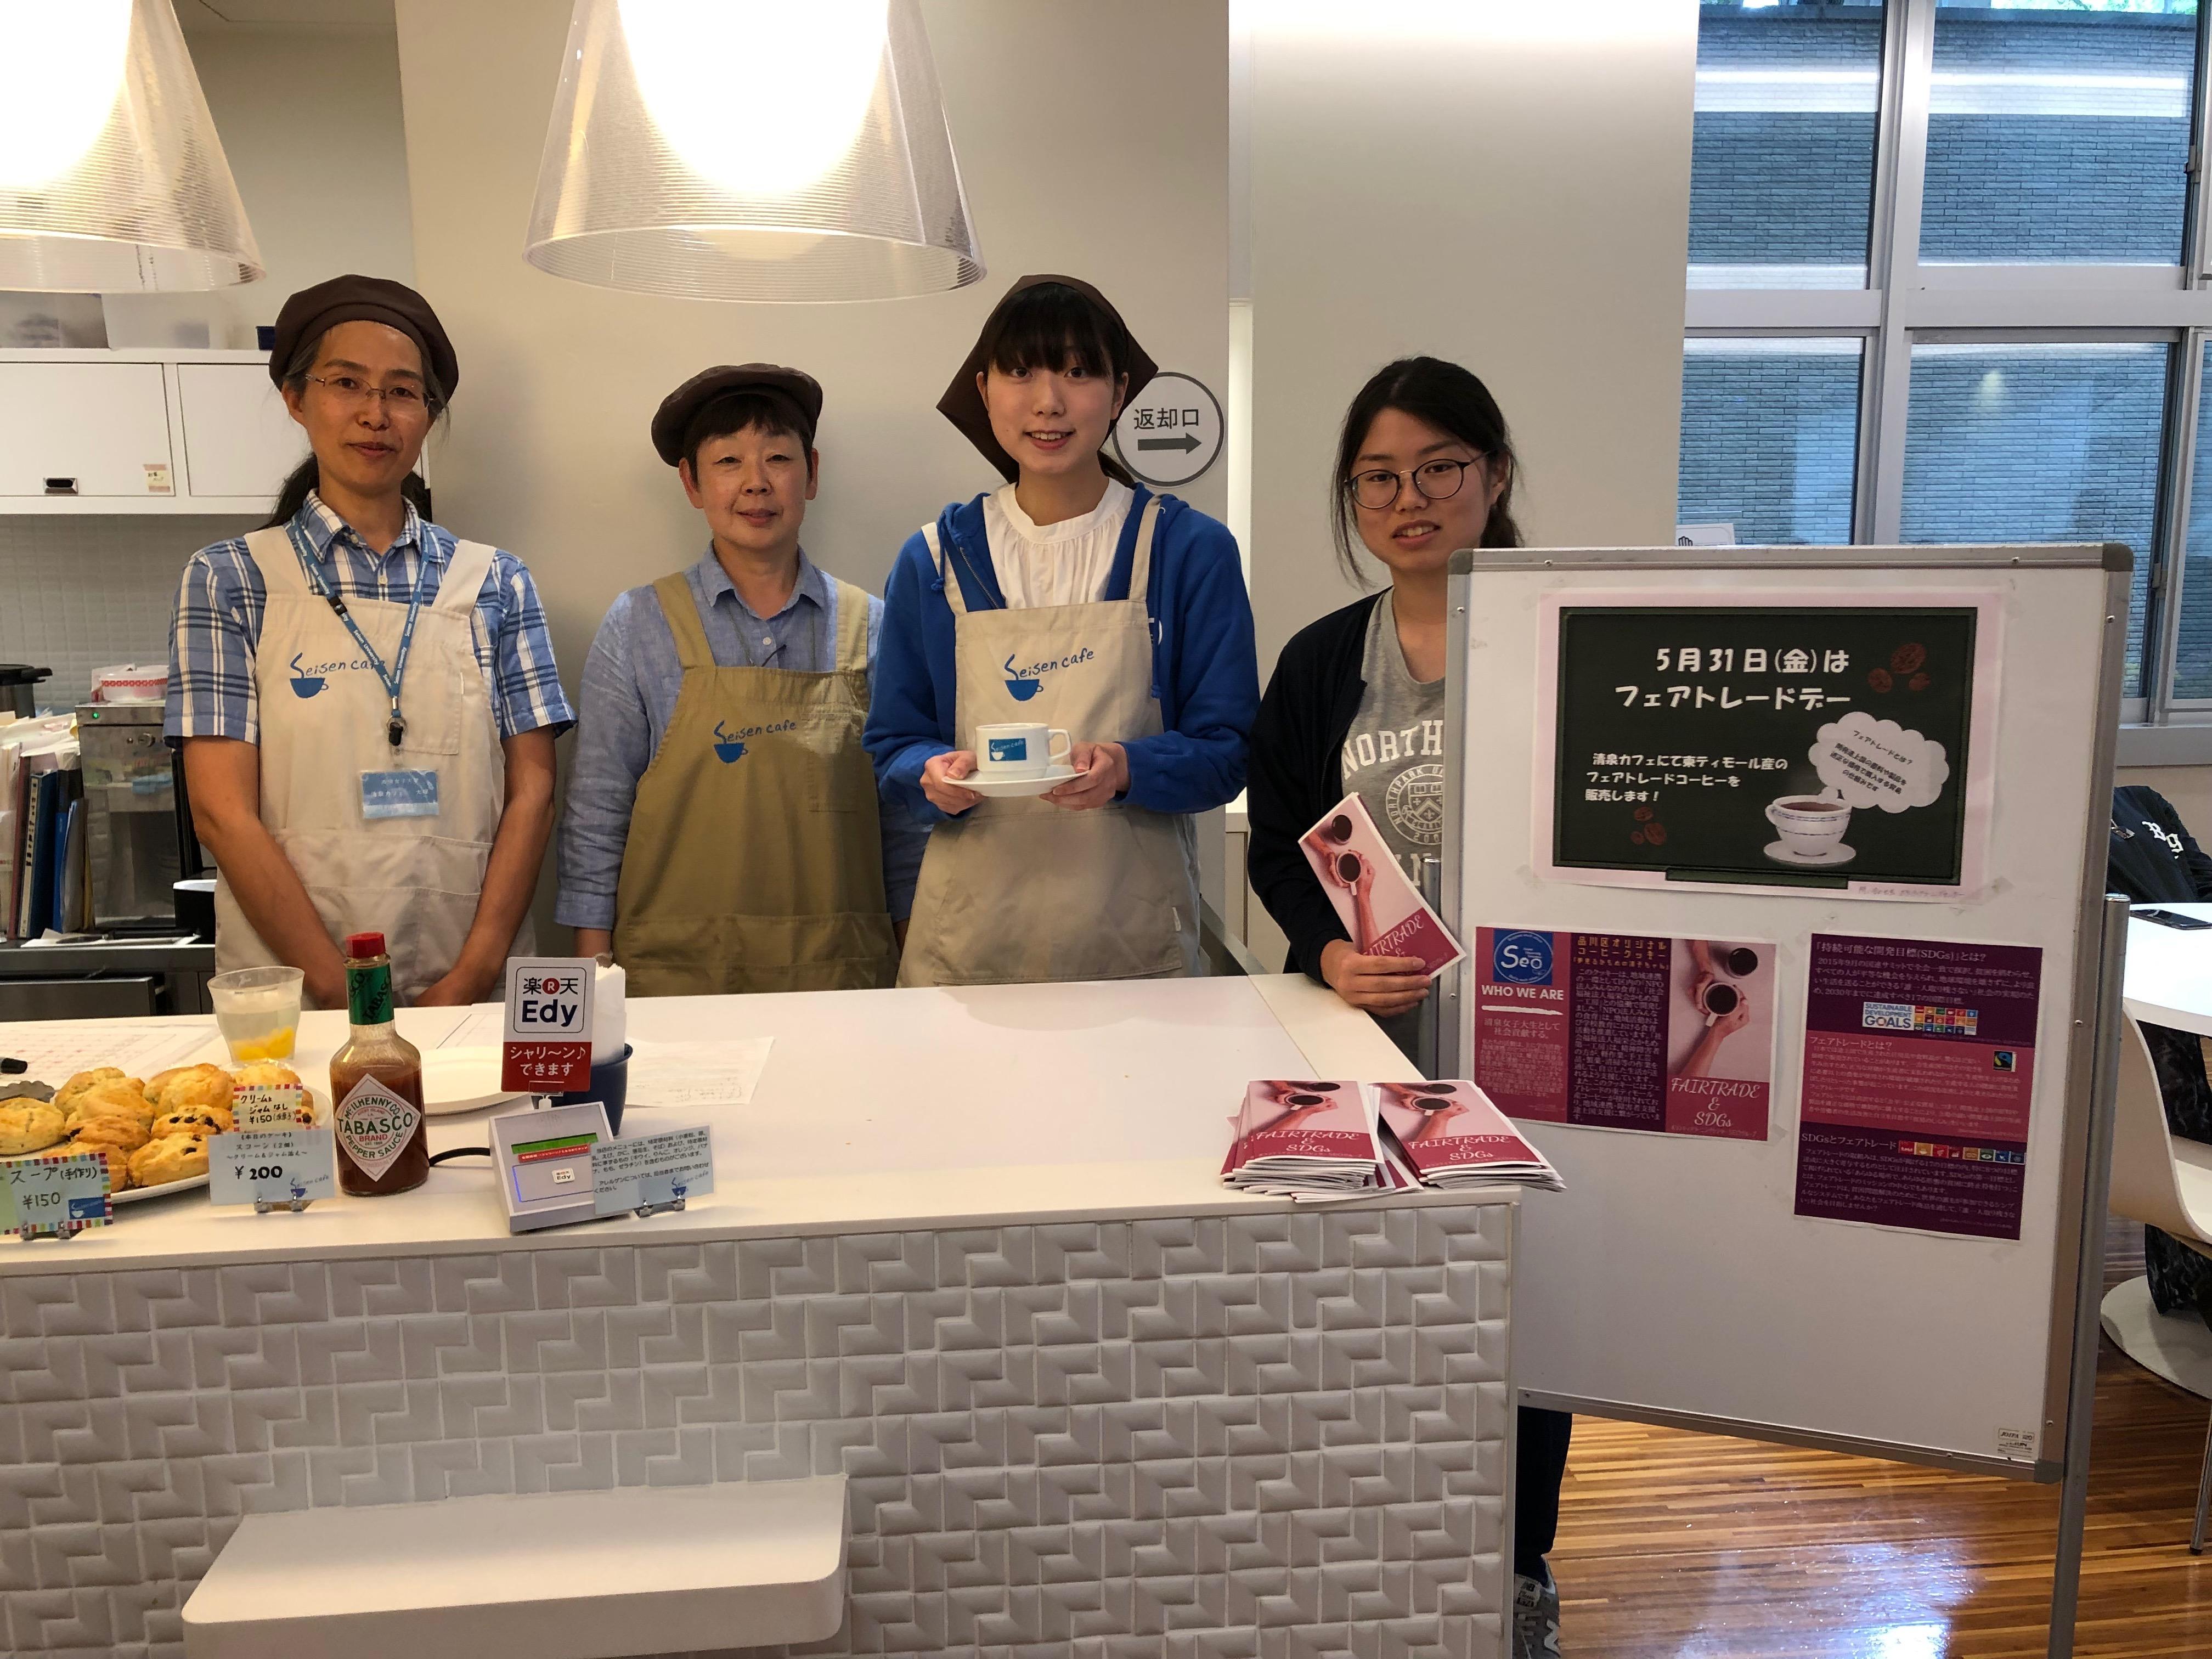 清泉女子大学が「フェアトレード・デー」を実施 -- カフェでフェアトレードのコーヒーと紅茶を販売